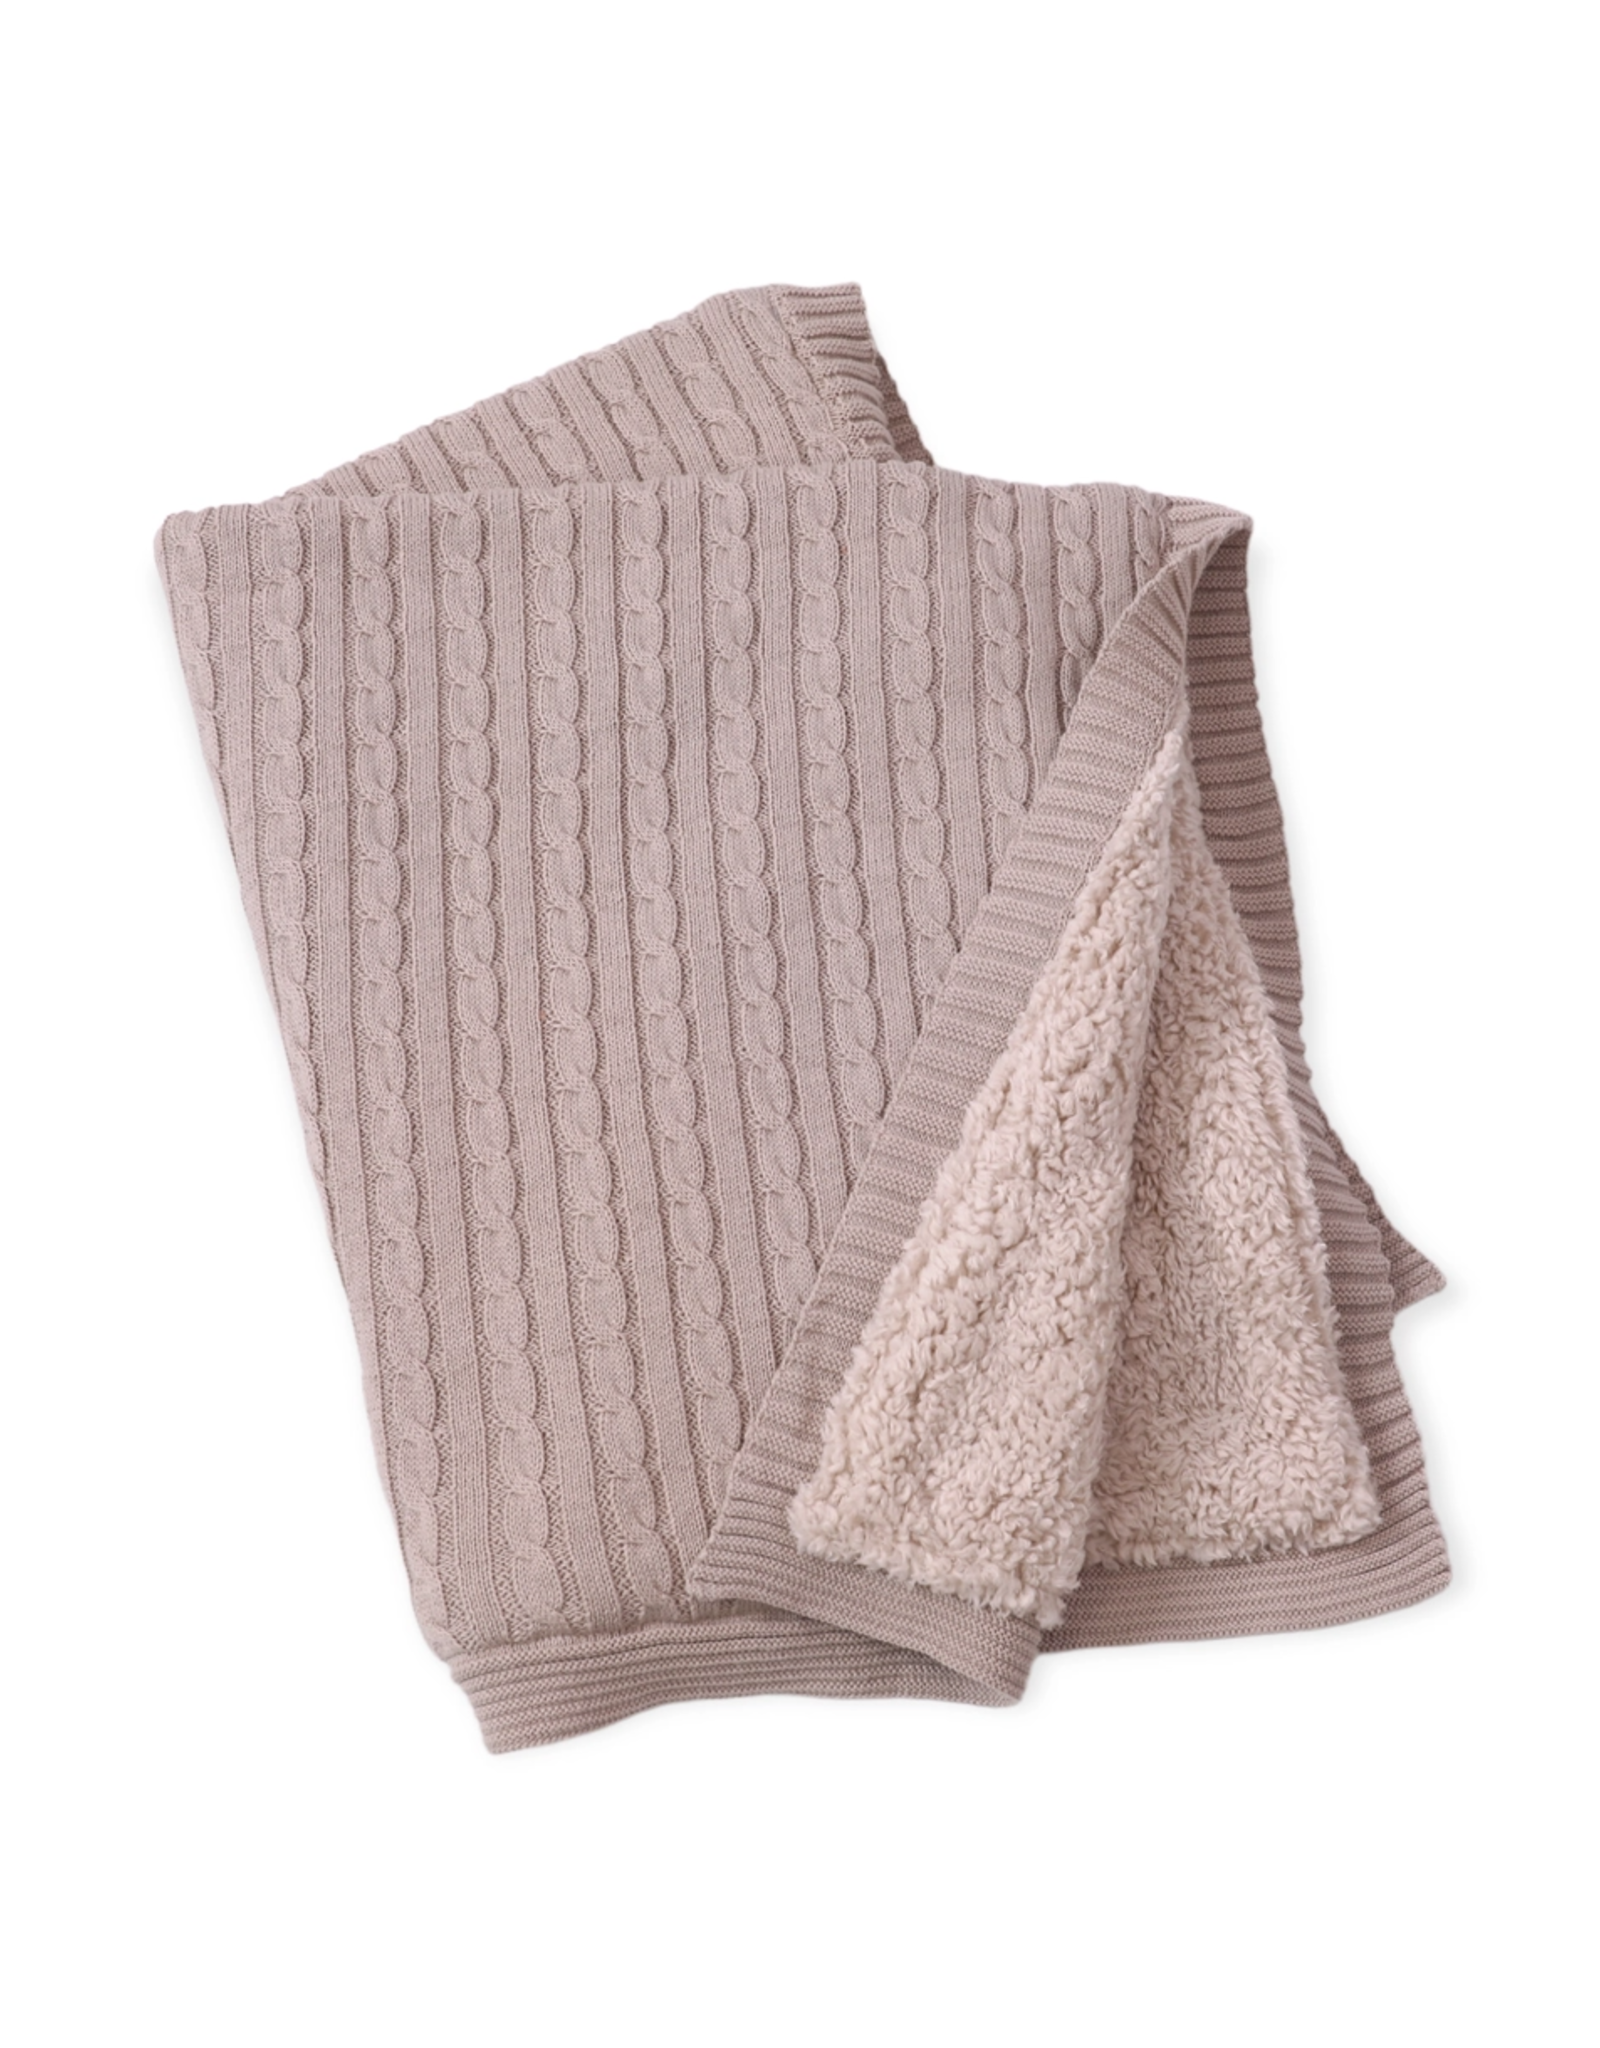 Viverano Cozy Sherpa Knit Blanket